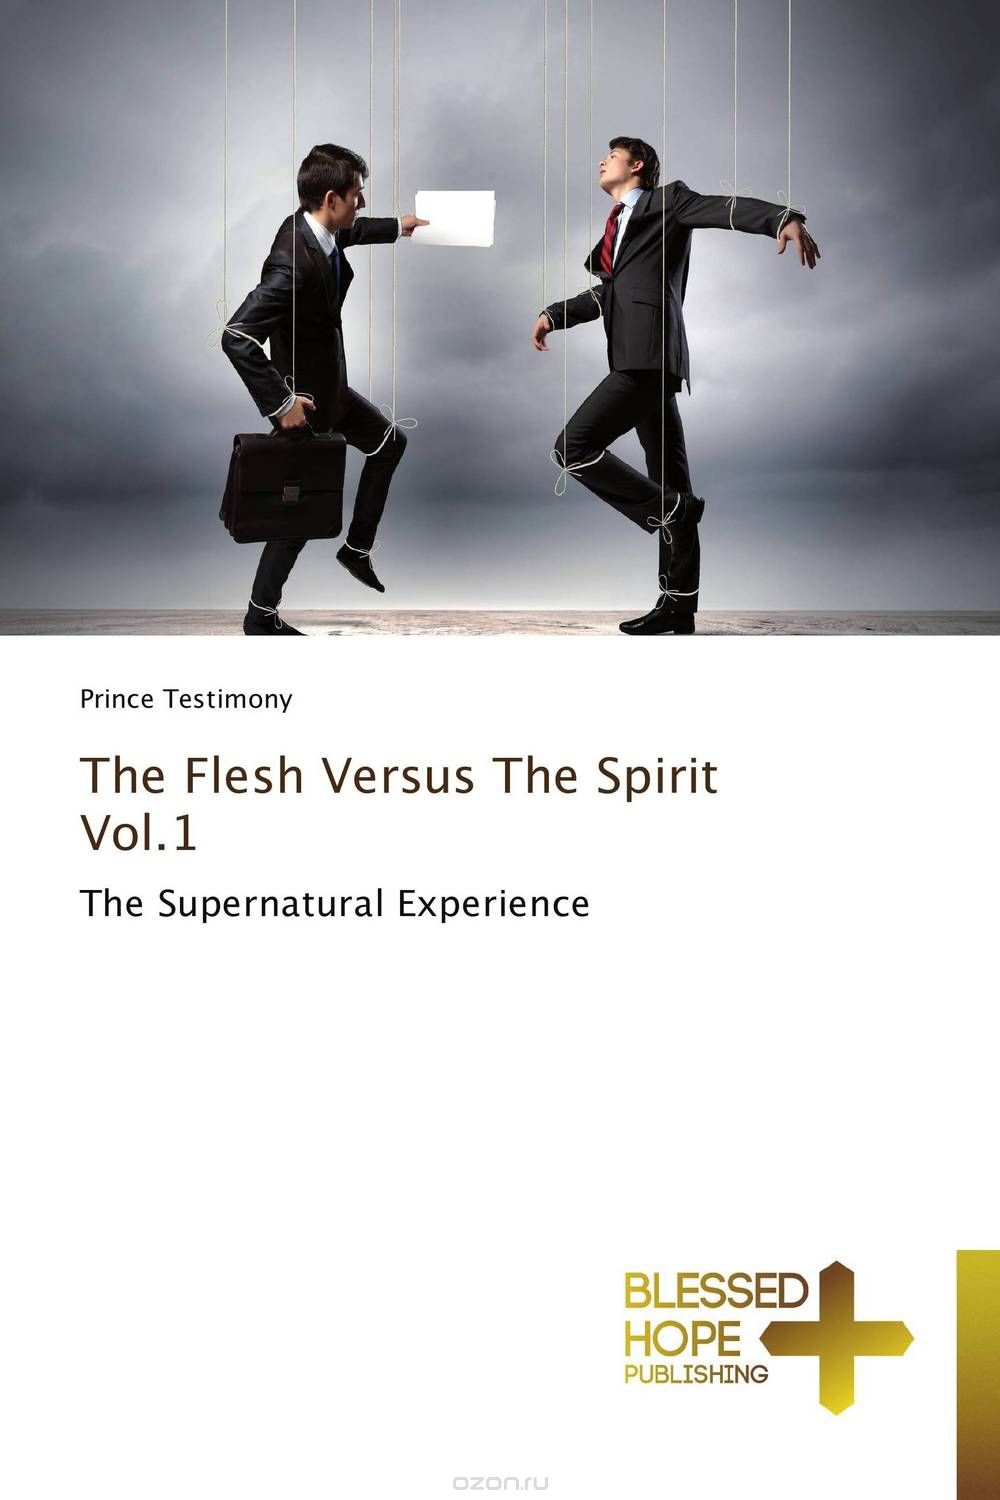 Скачать книгу "The Flesh Versus The Spirit Vol.1"